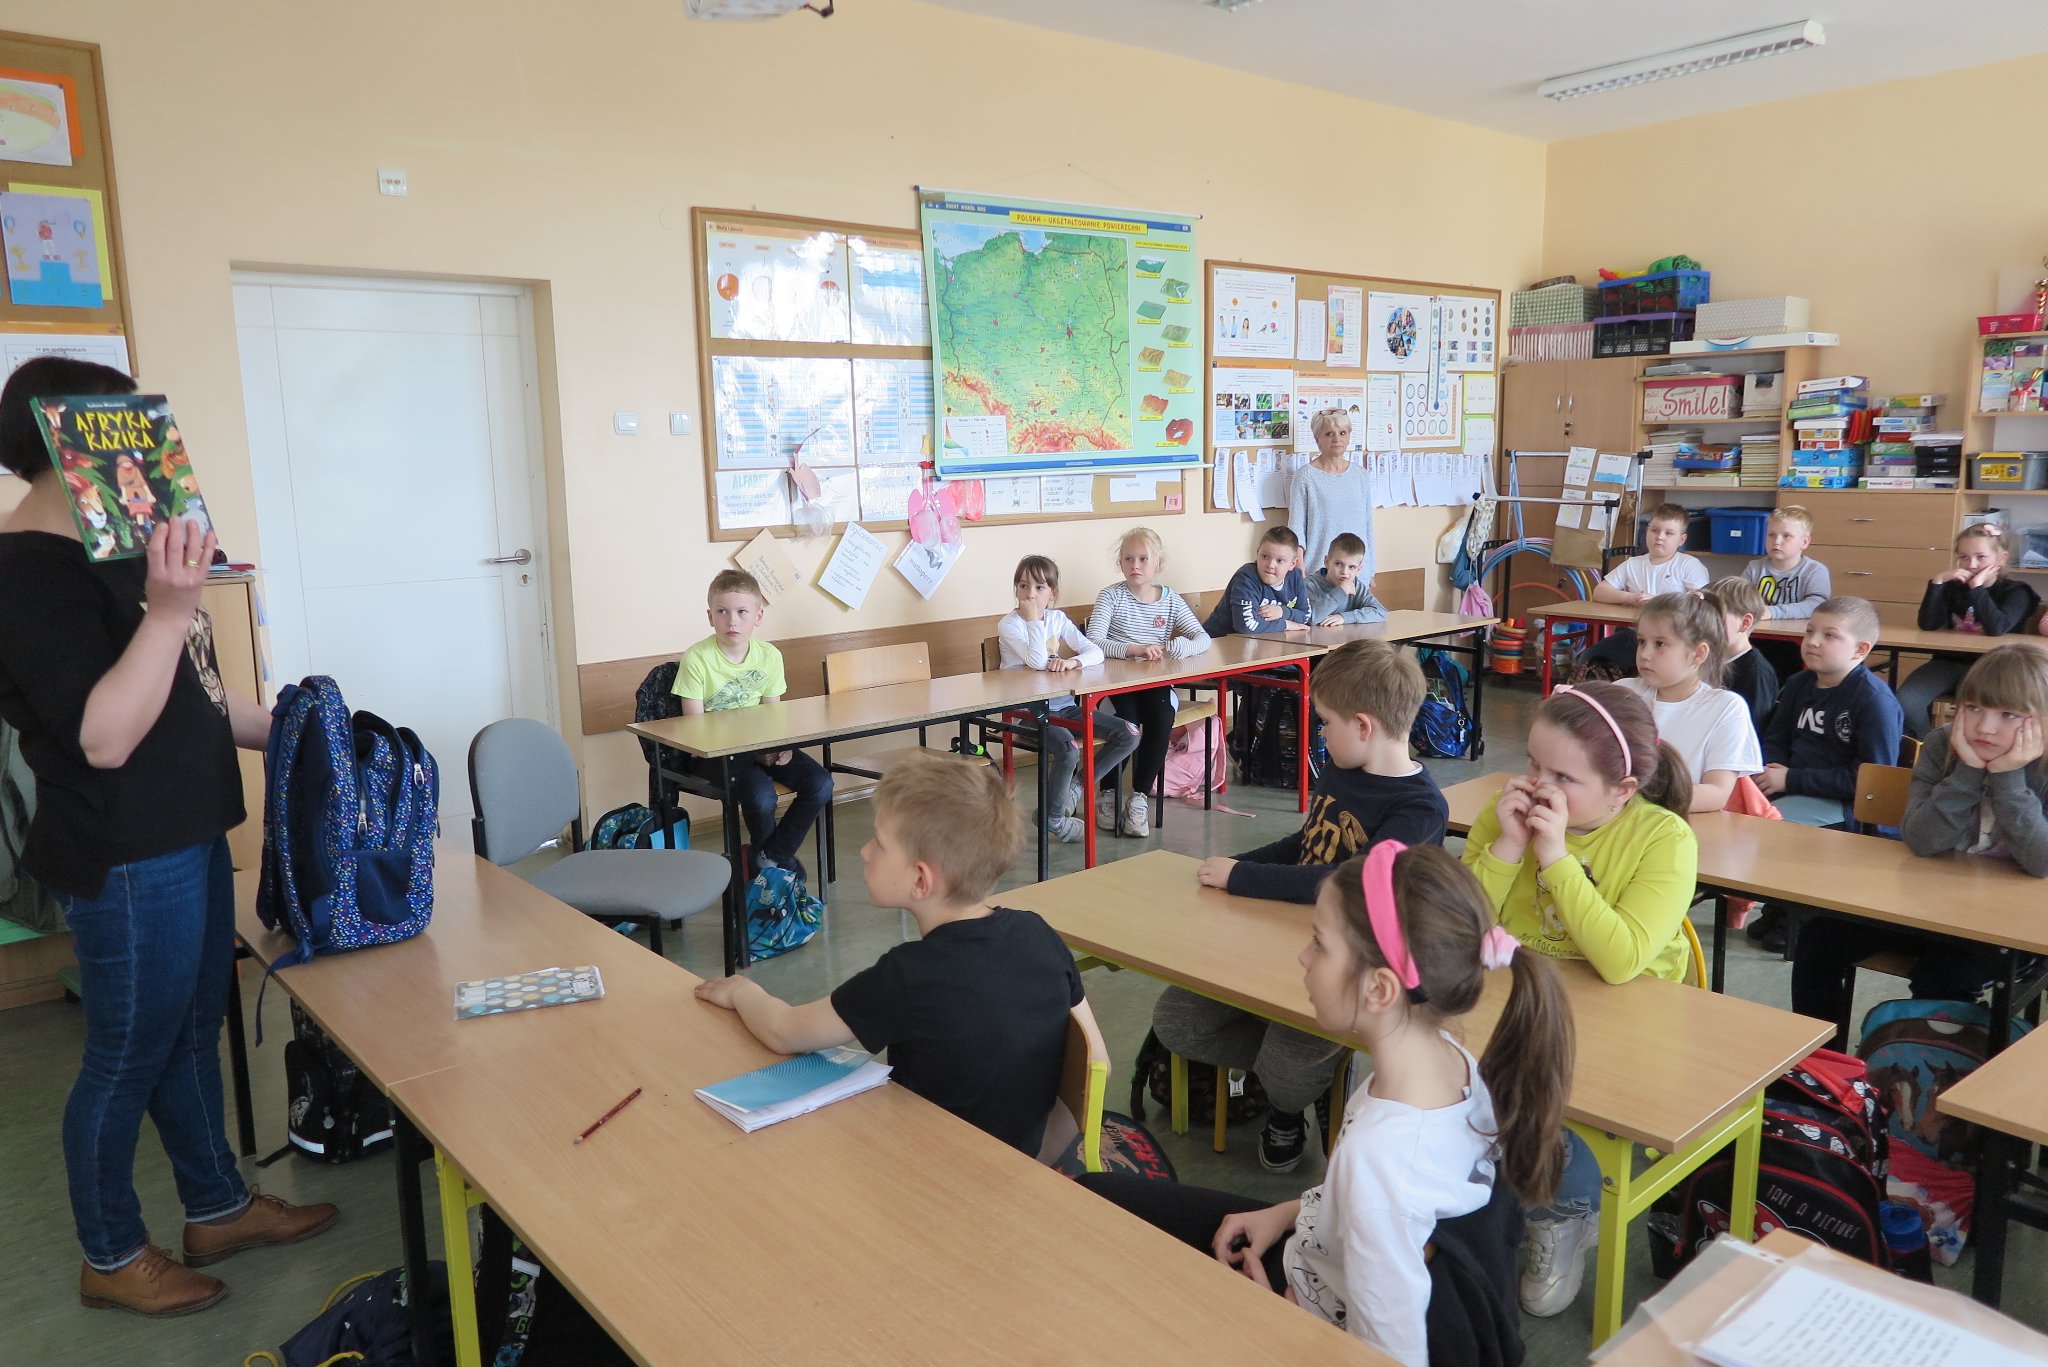 grupowe zdjęcie dzieci, nauczycielki i ze szkoły podstawowej w sali lekcyjnej, dzieci siedzą w swoich ławkach szkolnych, bibliotekarka trzyma w ręku książkę wyjętą z biblio-plecaka